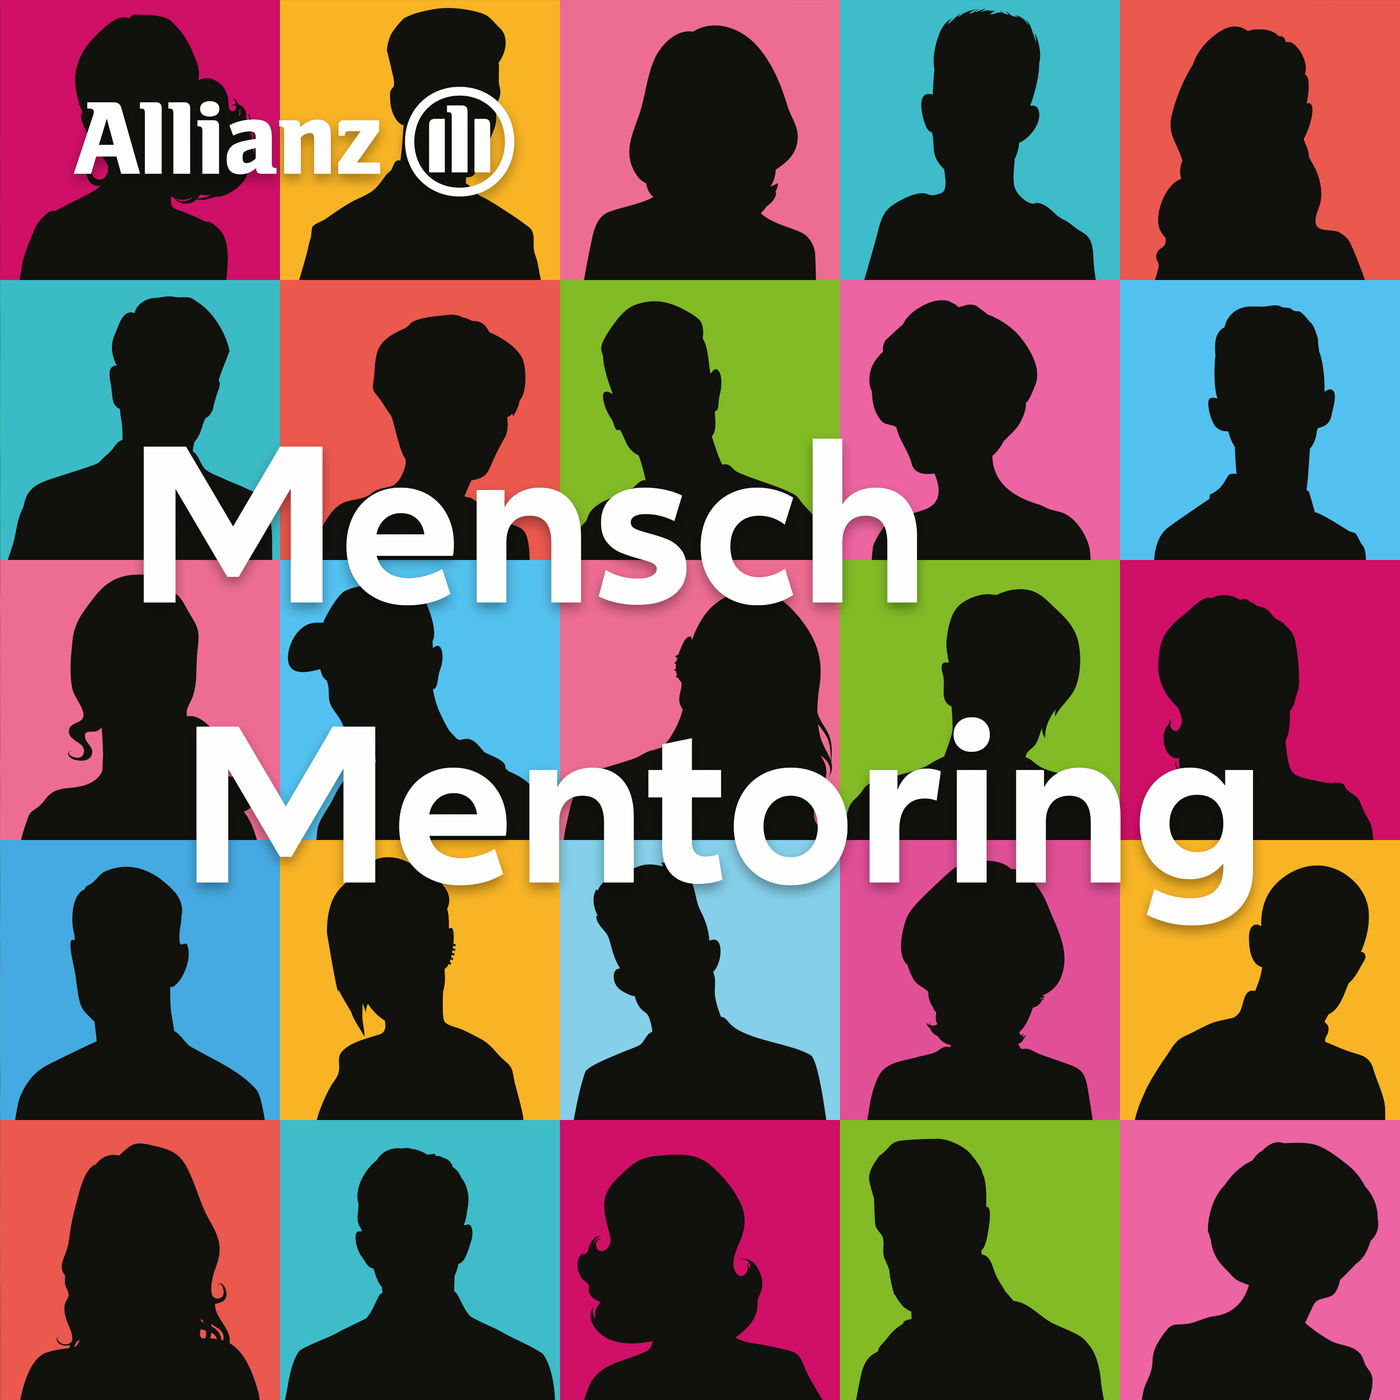 Mensch Mentoring - Mutual Mentoring in der Allianz Suisse mit Agata und Yannick